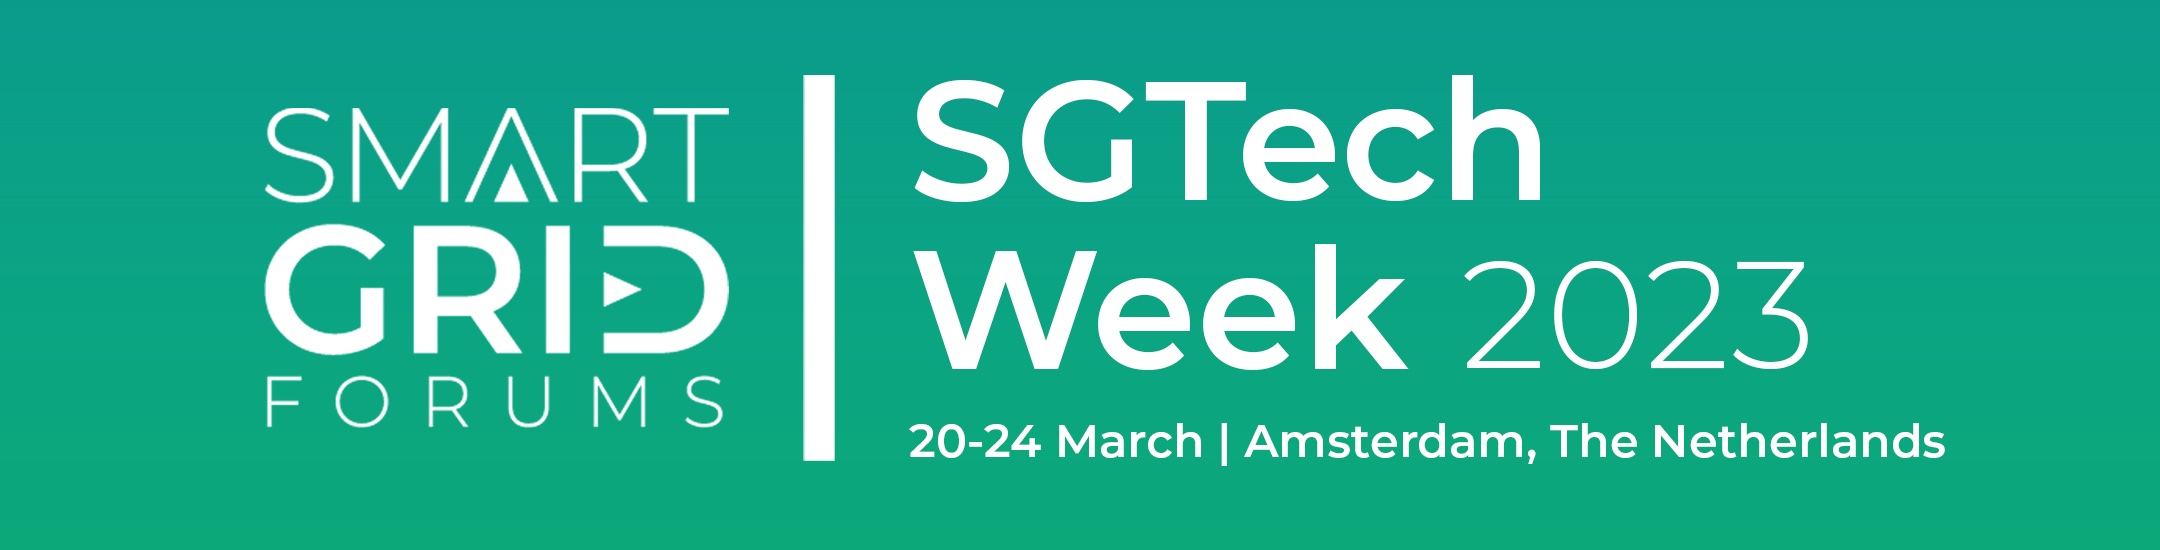 SGTech Week